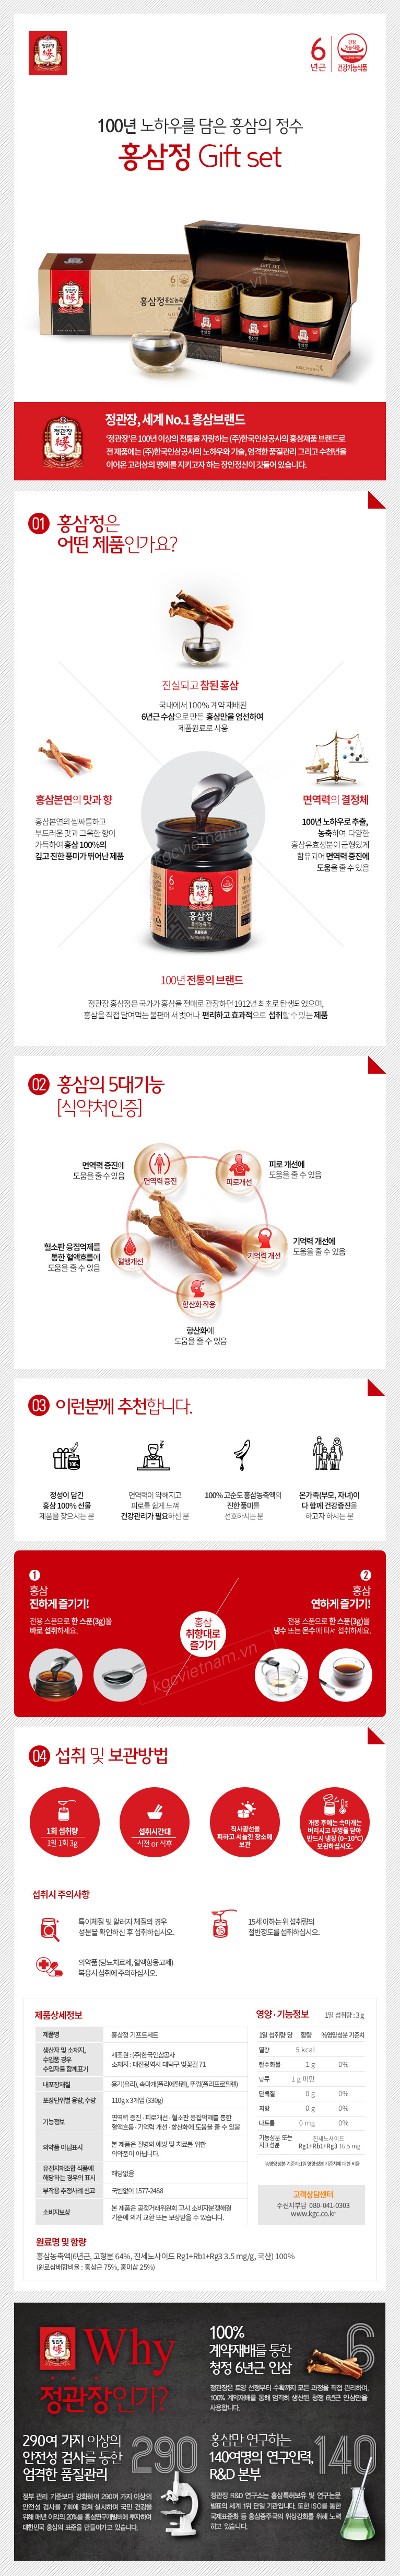 Cao hồng sâm chính phủ KGC Hàn Quốc 110g x 3 lọ